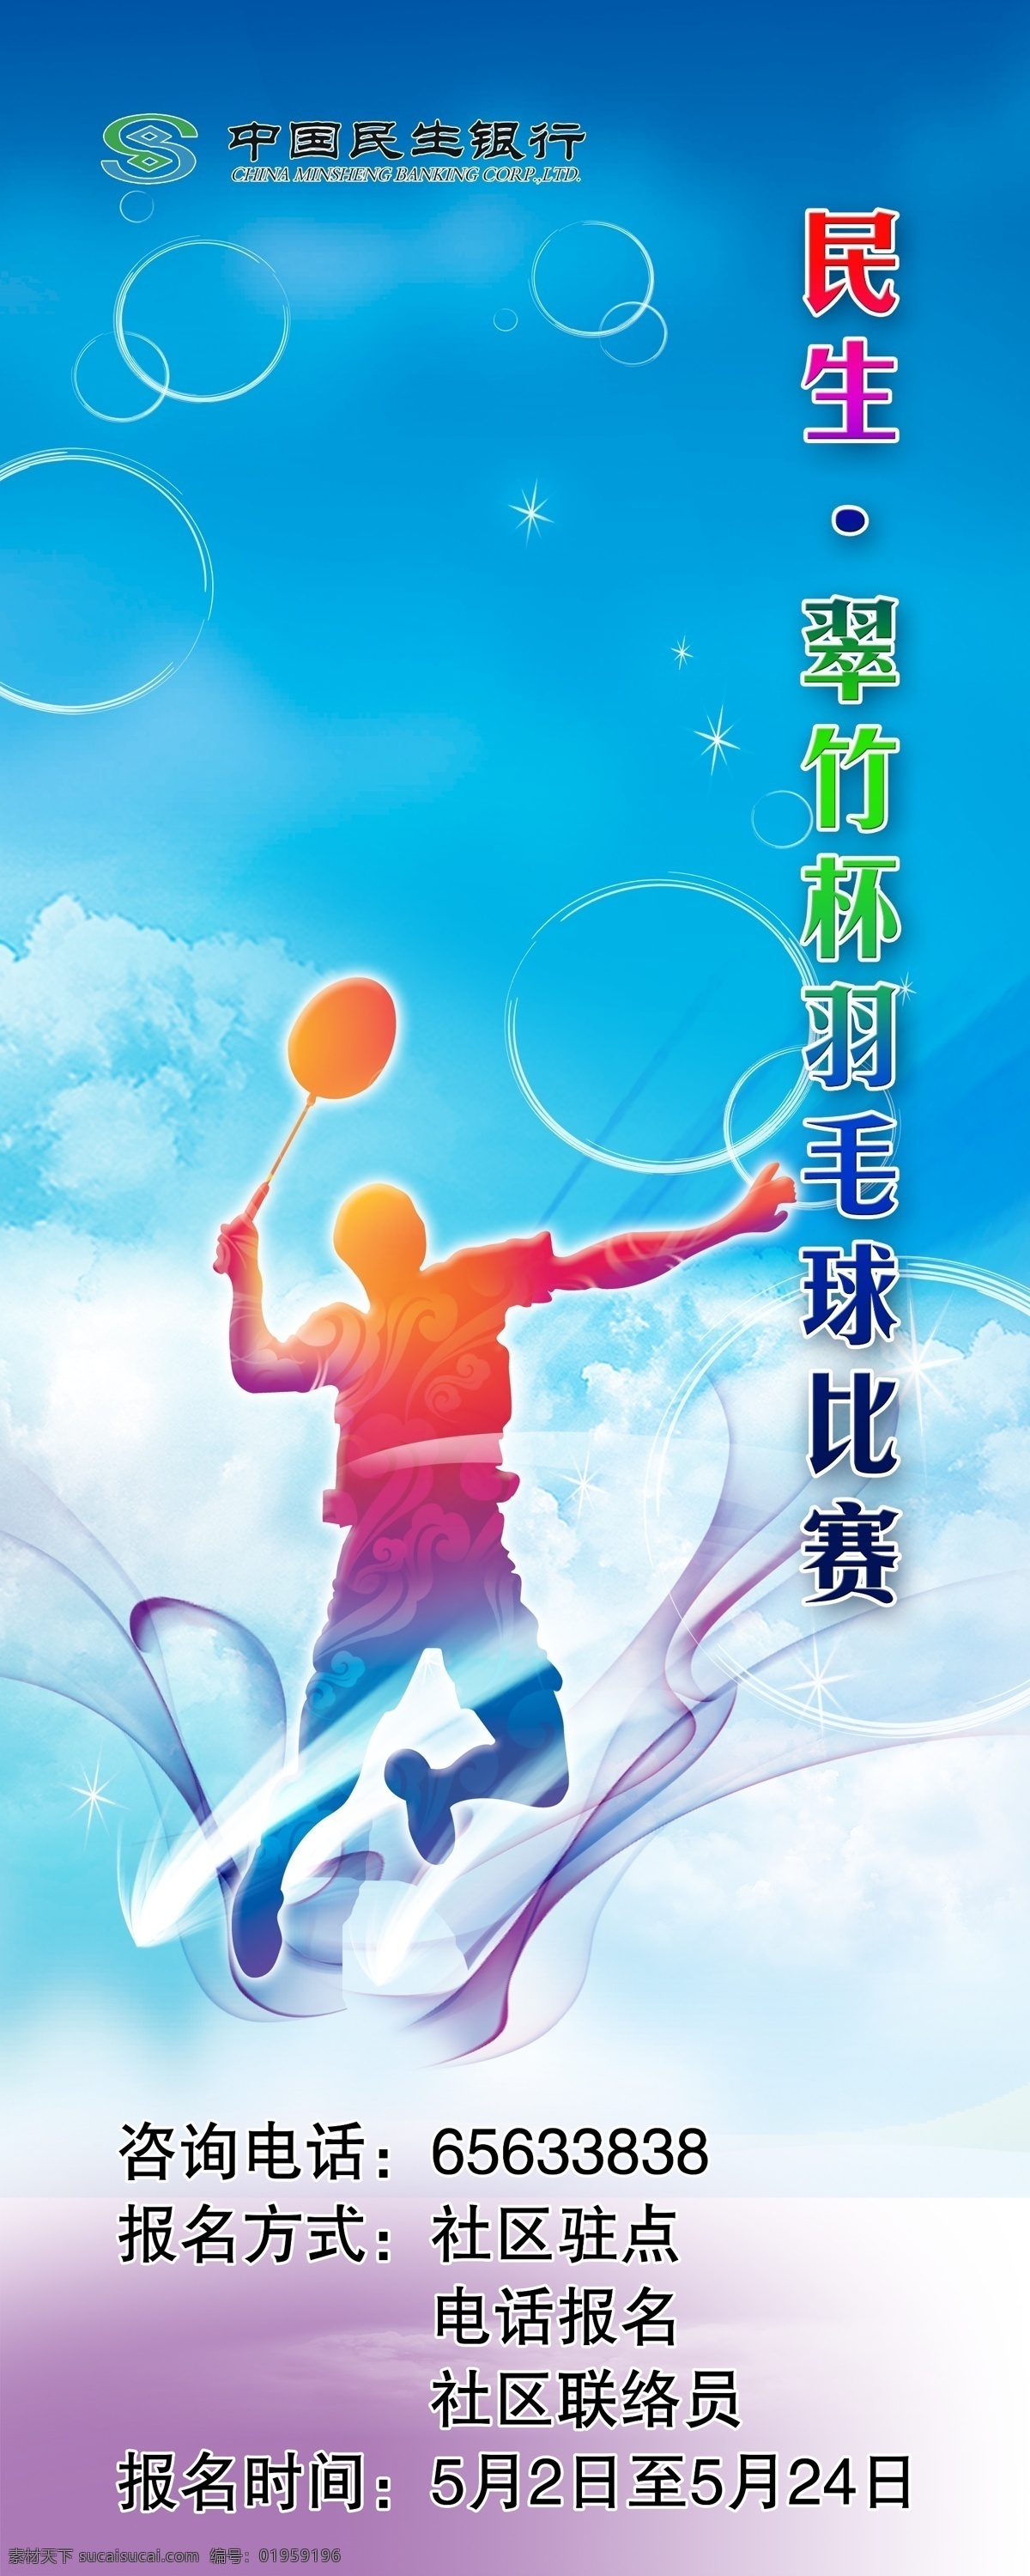 民生银行 羽毛球赛 小区球赛 羽毛球比赛 羽毛球 比赛 展架 海报 广告设计模板 源文件